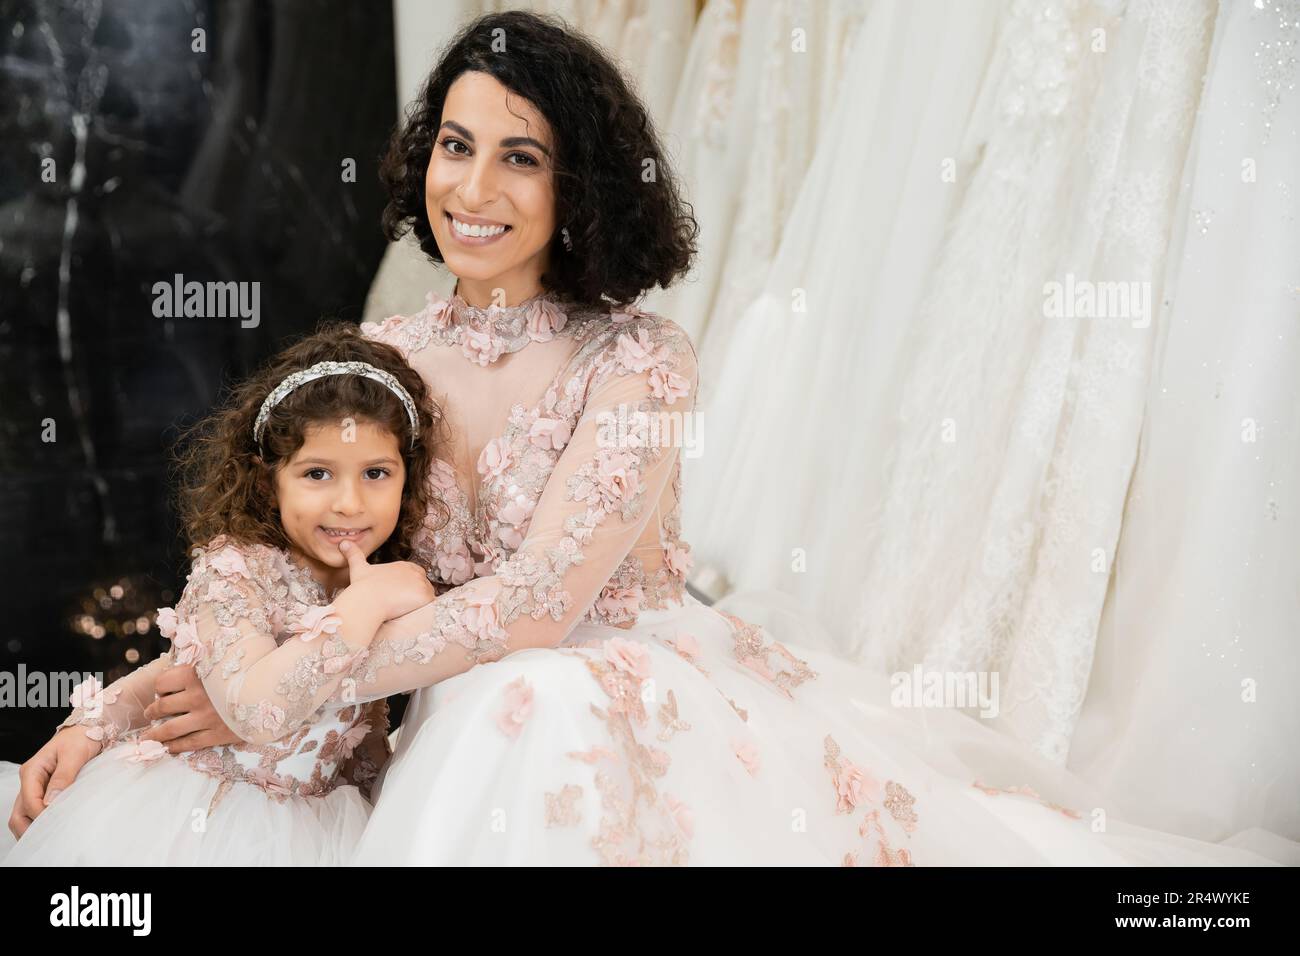 Brünette Frau aus dem Nahen Osten mit welligen Haaren, die ein süßes Mädchen umarmt und in Brautkleidern, Blumenmotiven, Mutter und Tochter lächelt Stockfoto